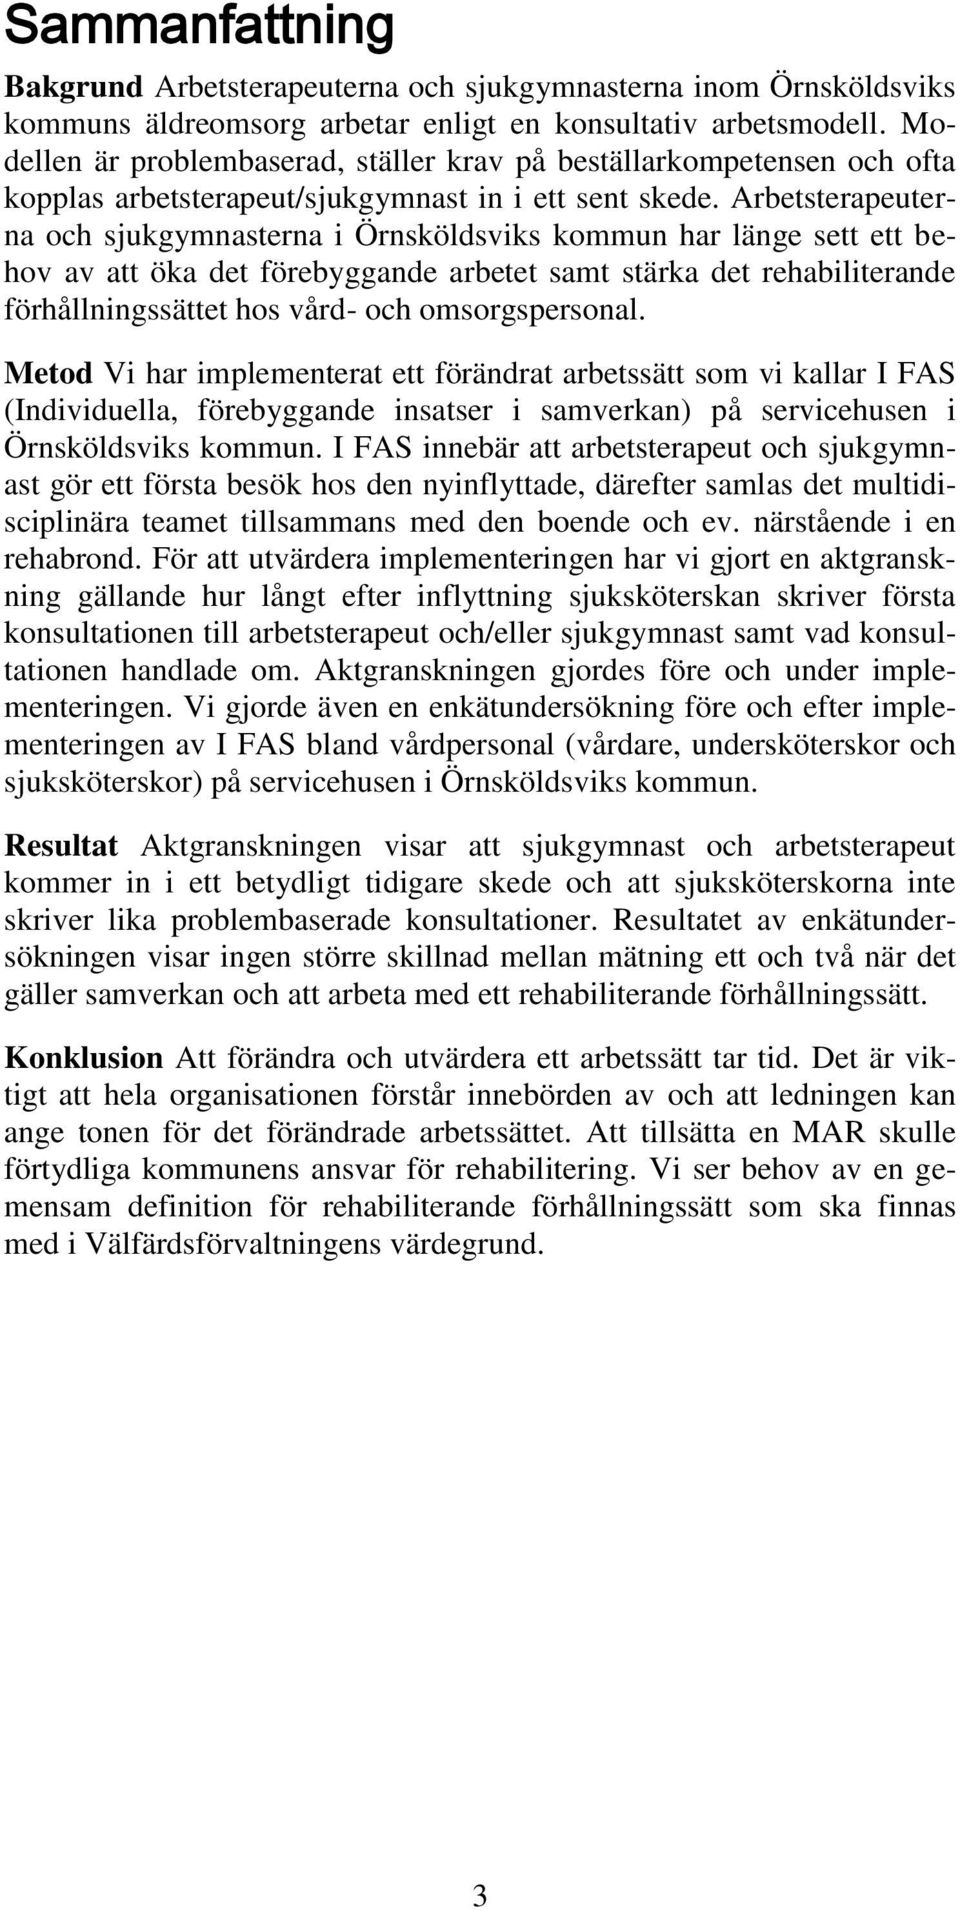 Arbetsterapeuterna och sjukgymnasterna i Örnsköldsviks kommun har länge sett ett behov av att öka det förebyggande arbetet samt stärka det rehabiliterande förhållningssättet hos vård- och